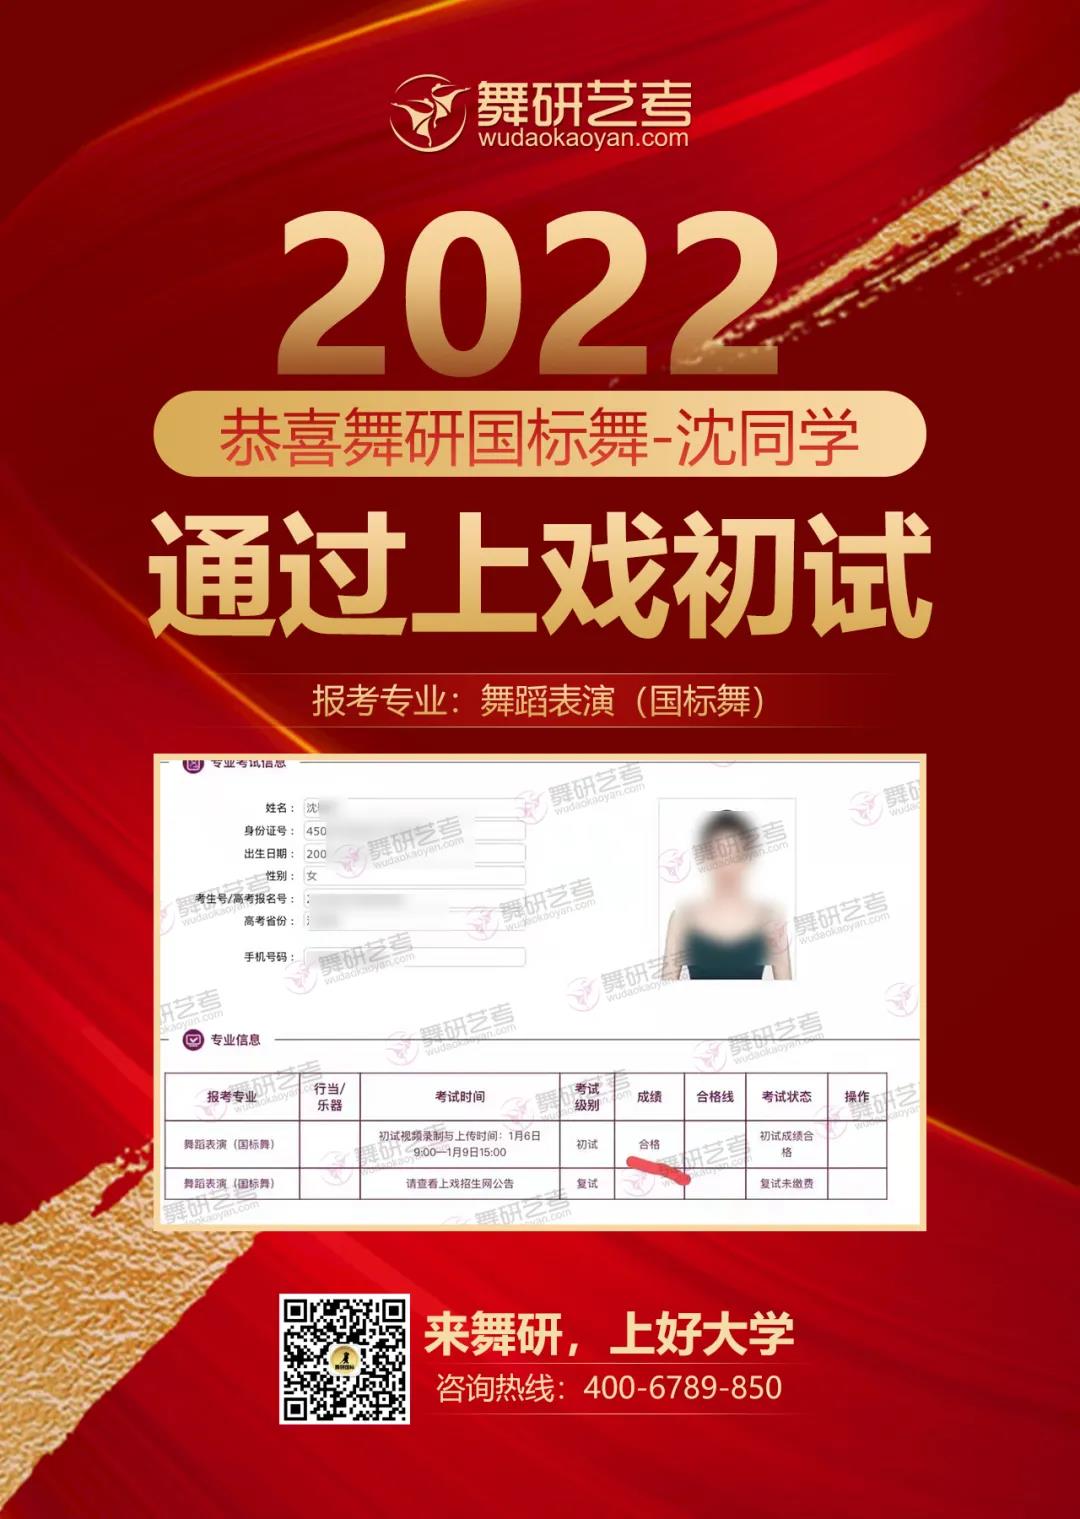 2022年舞研舞蹈上海戏剧学院校考初试捷报：60余人通过上戏初试！全国初试合格的女生中，约1/4来自舞研！